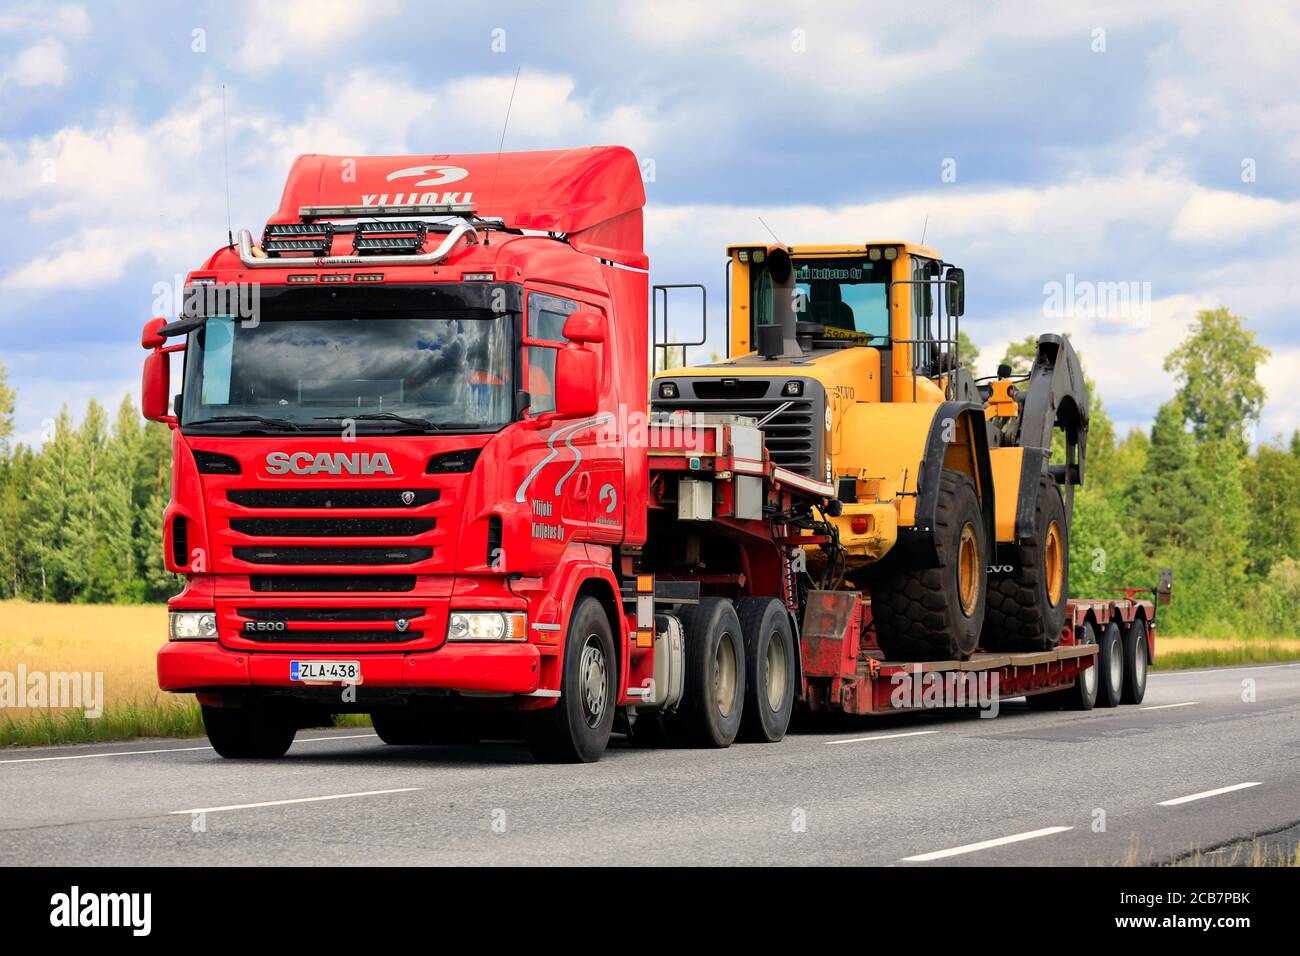 Remorque semi-remorque Scania R500 Ylijoki Kuljetus Oy transporte une chargeuse sur pneus Volvo avec des grappins à grumes le long de l'autoroute. Jokioinen, Finlande. 7 août 2020. Banque D'Images